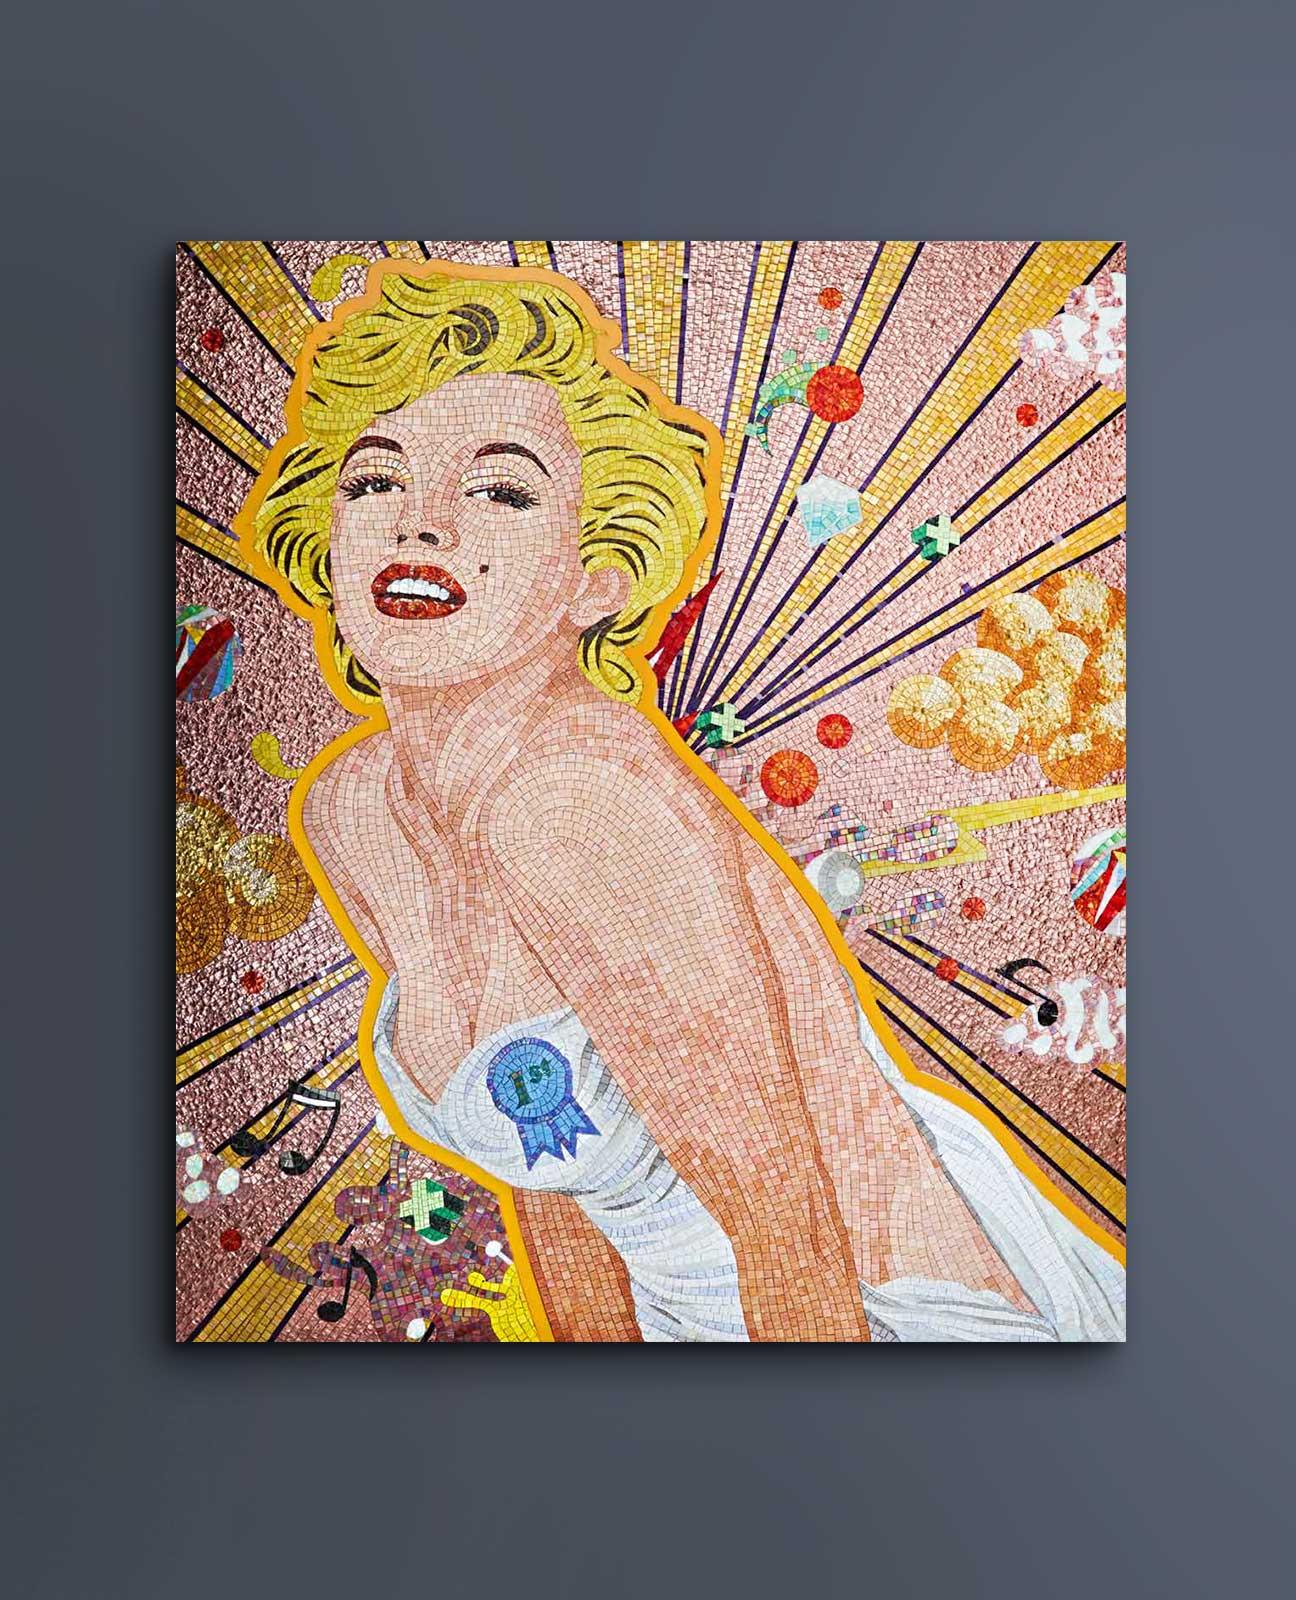 Dieses farbenfrohe Pop-Inspirationsmosaik ist eine Ode an die beliebte und einzigartige Marilyn Monroe. Die Diva ist nach wie vor eine der bedeutendsten Schauspielerinnen auf der Kinoleinwand. Umgeben von mehrfarbigen Elementen posiert Monroe